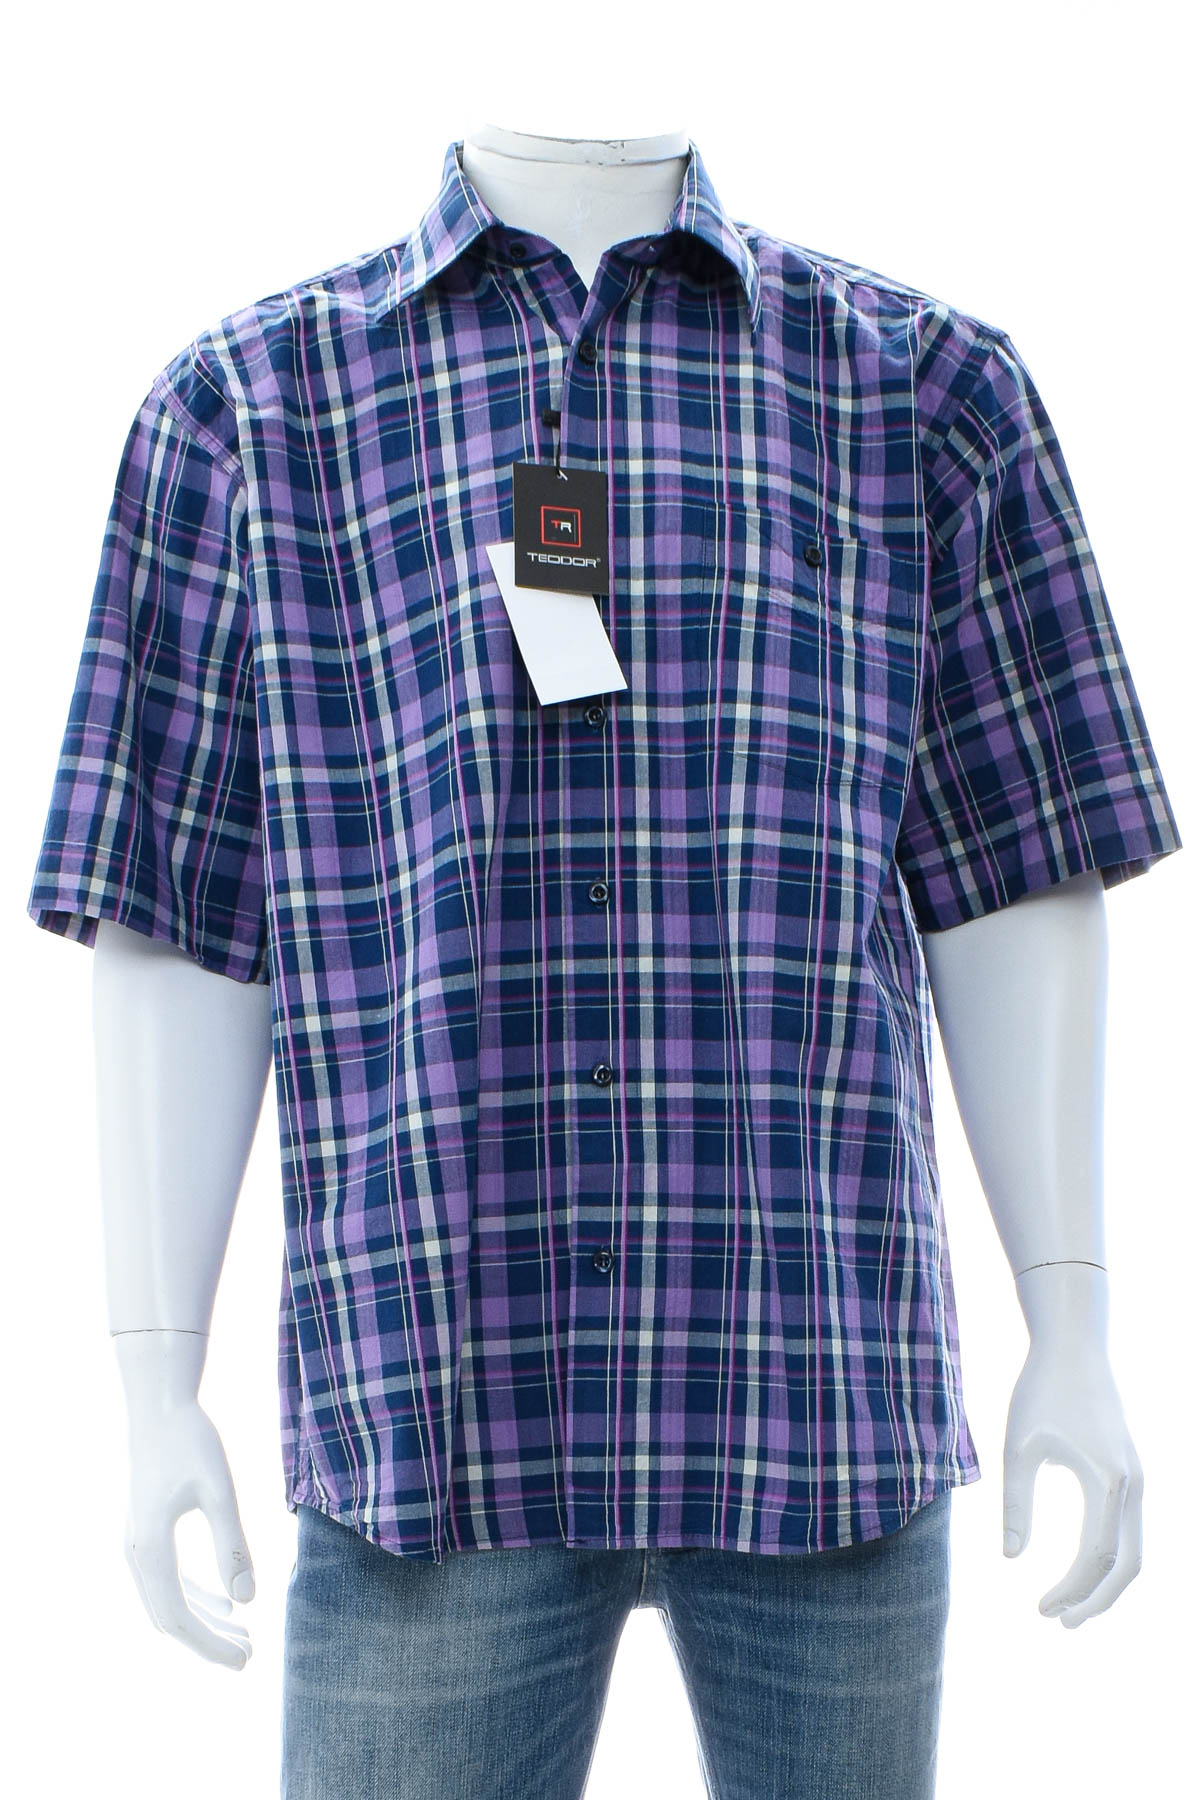 Ανδρικό πουκάμισο - Teodor - 0